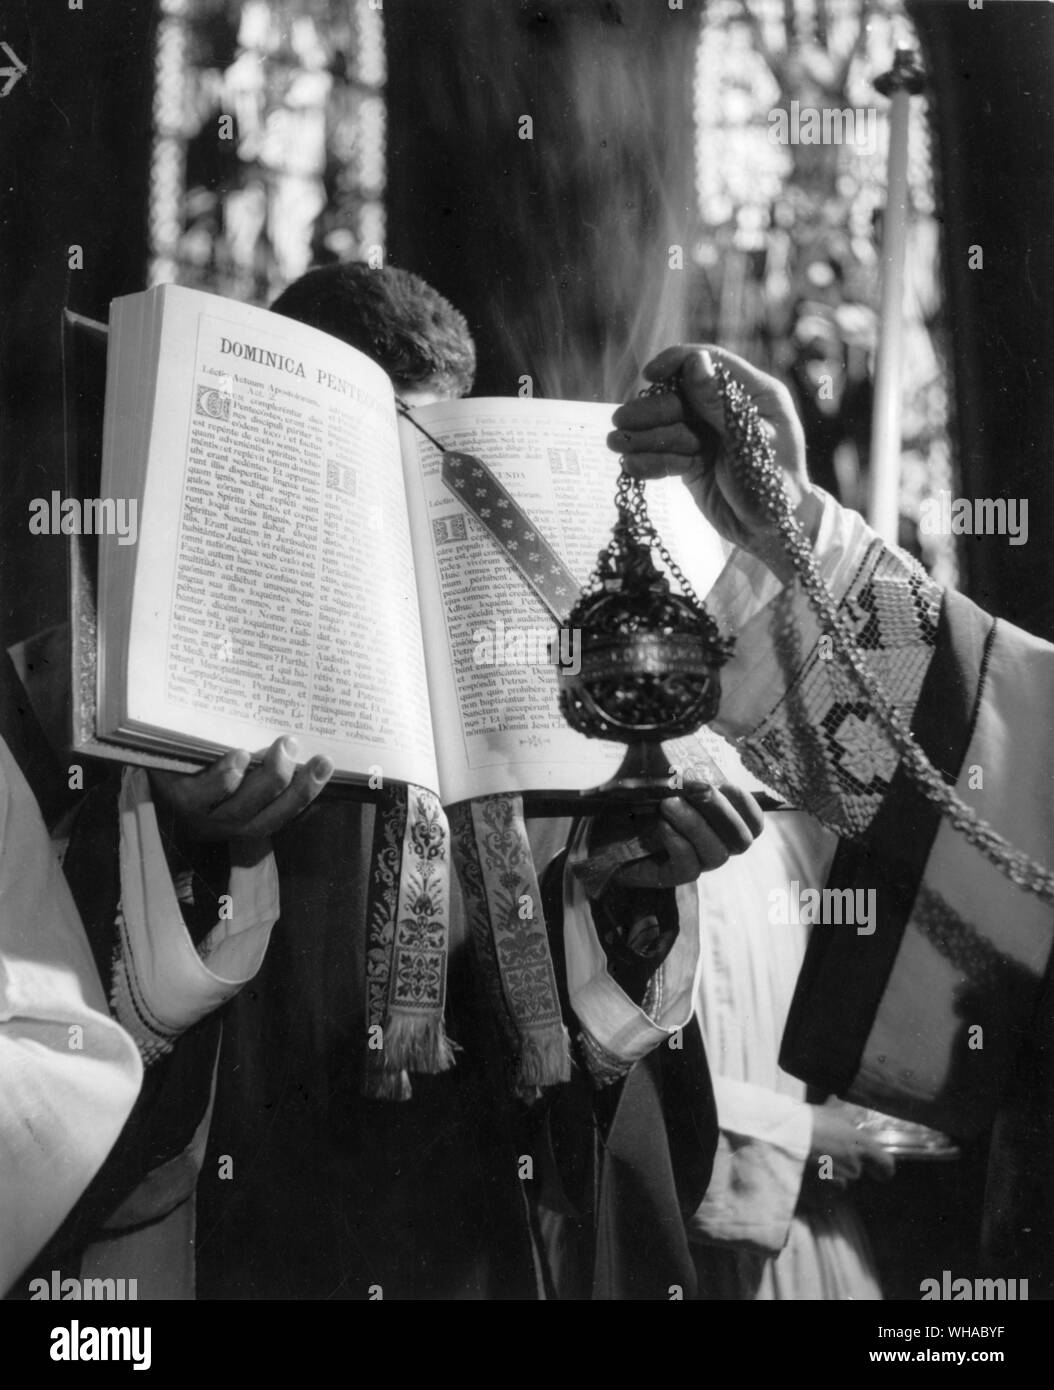 Il canto del Vangelo ad alta massa è accompagnata da una processione e incensing del libro per contrassegnare la solennità della lettura della parola di Dio. Foto Stock